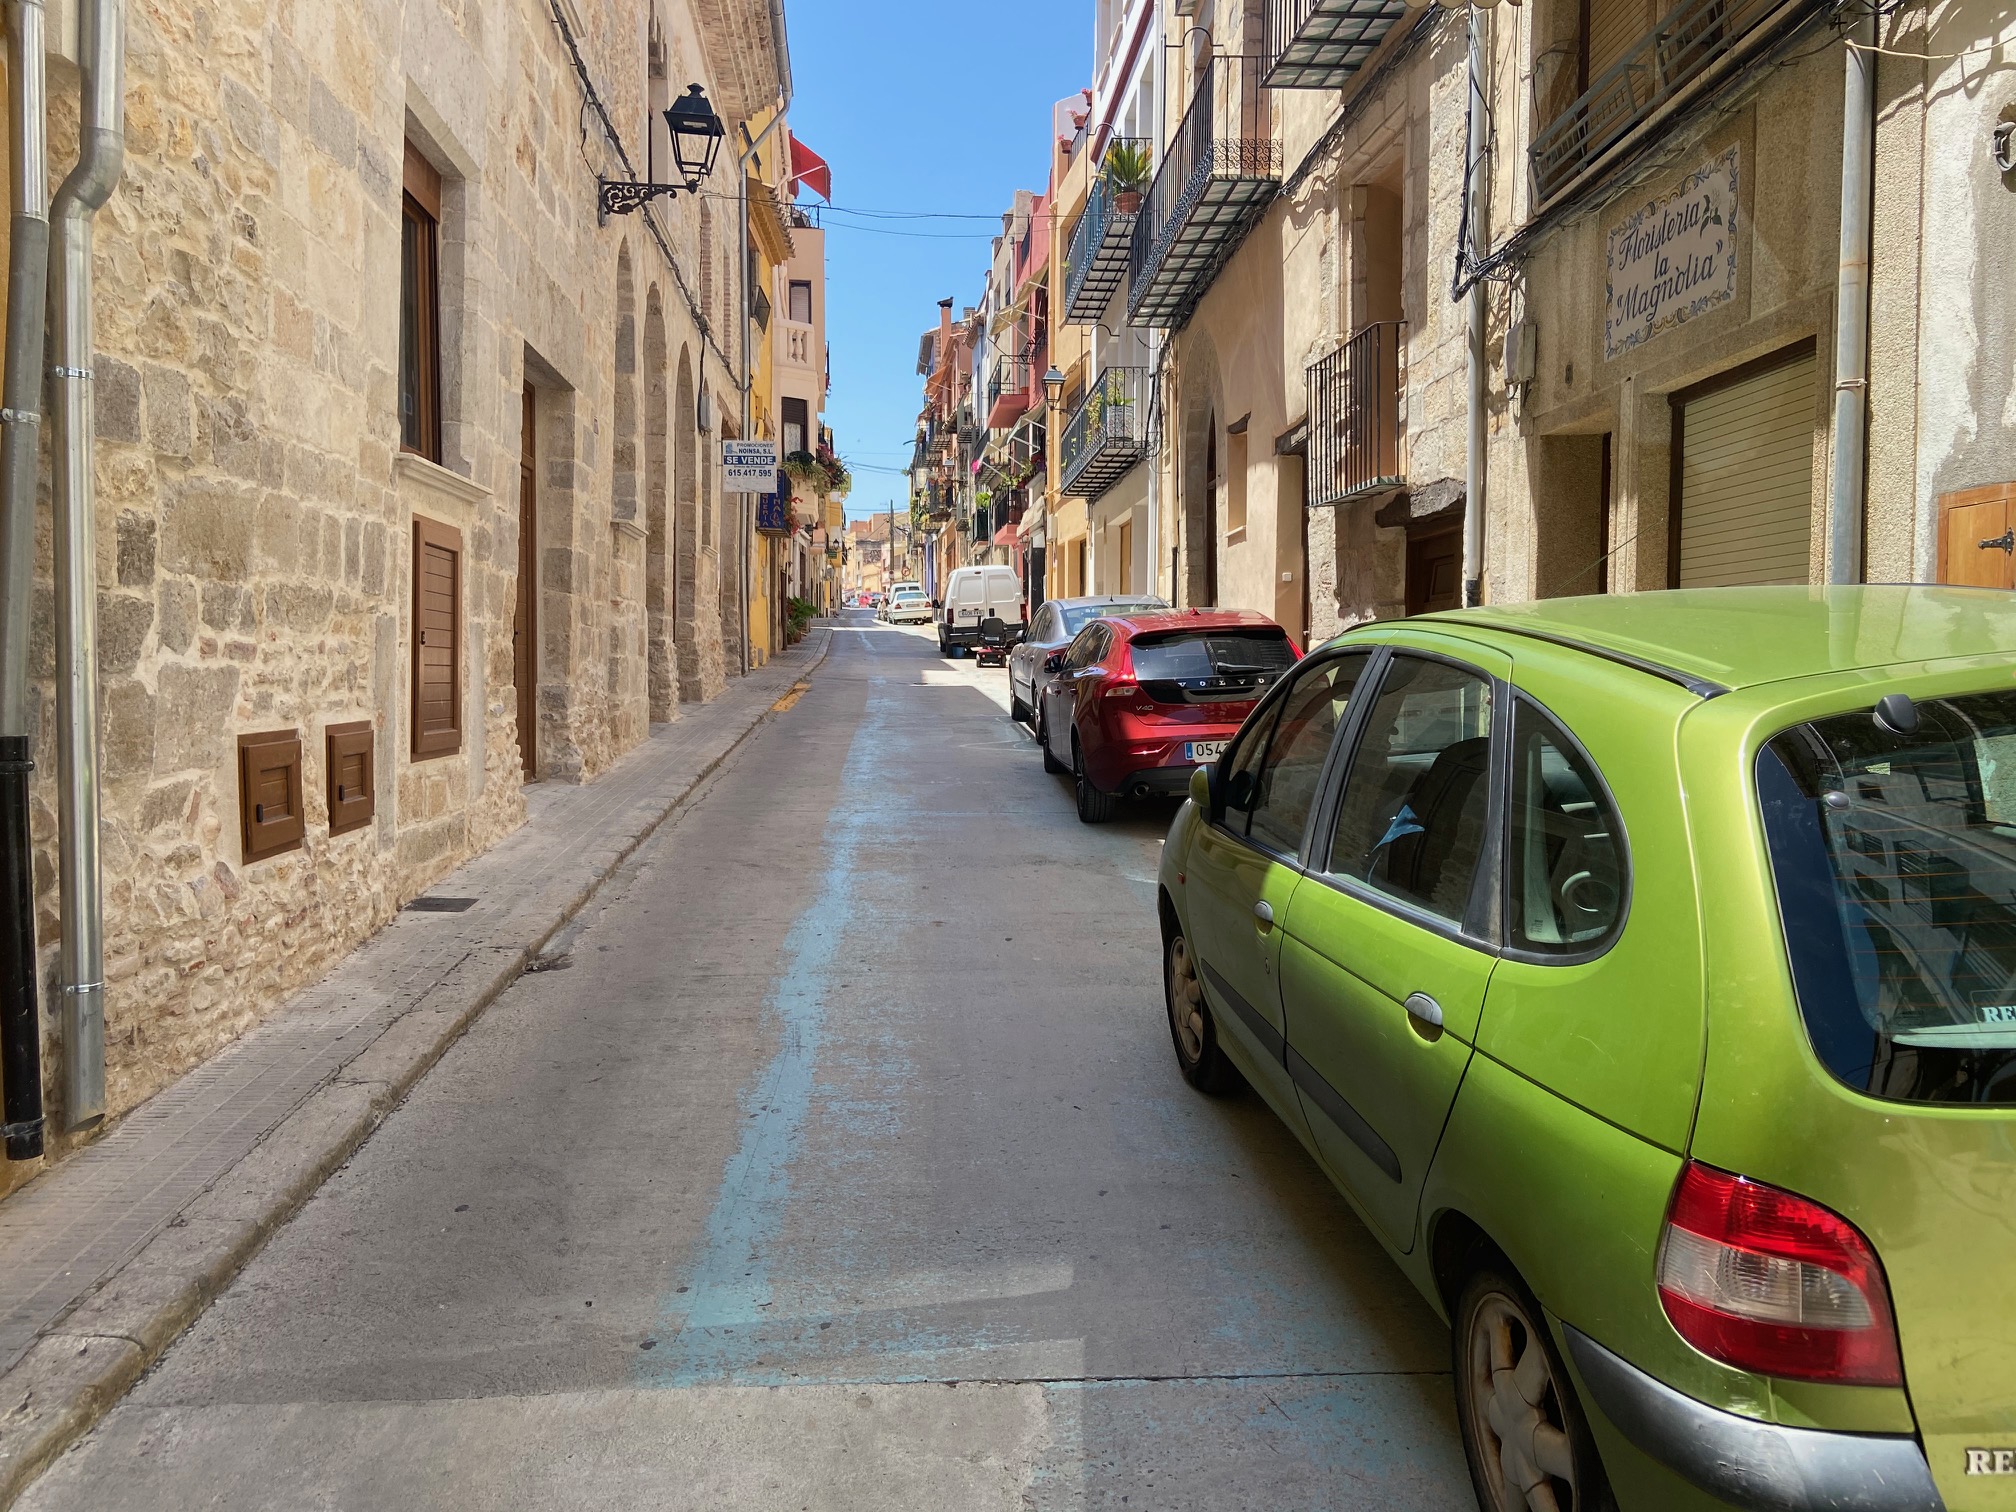 La conselleria subvencionarà el projecte d'adequació de carrers del centre històric de Sant Mateu